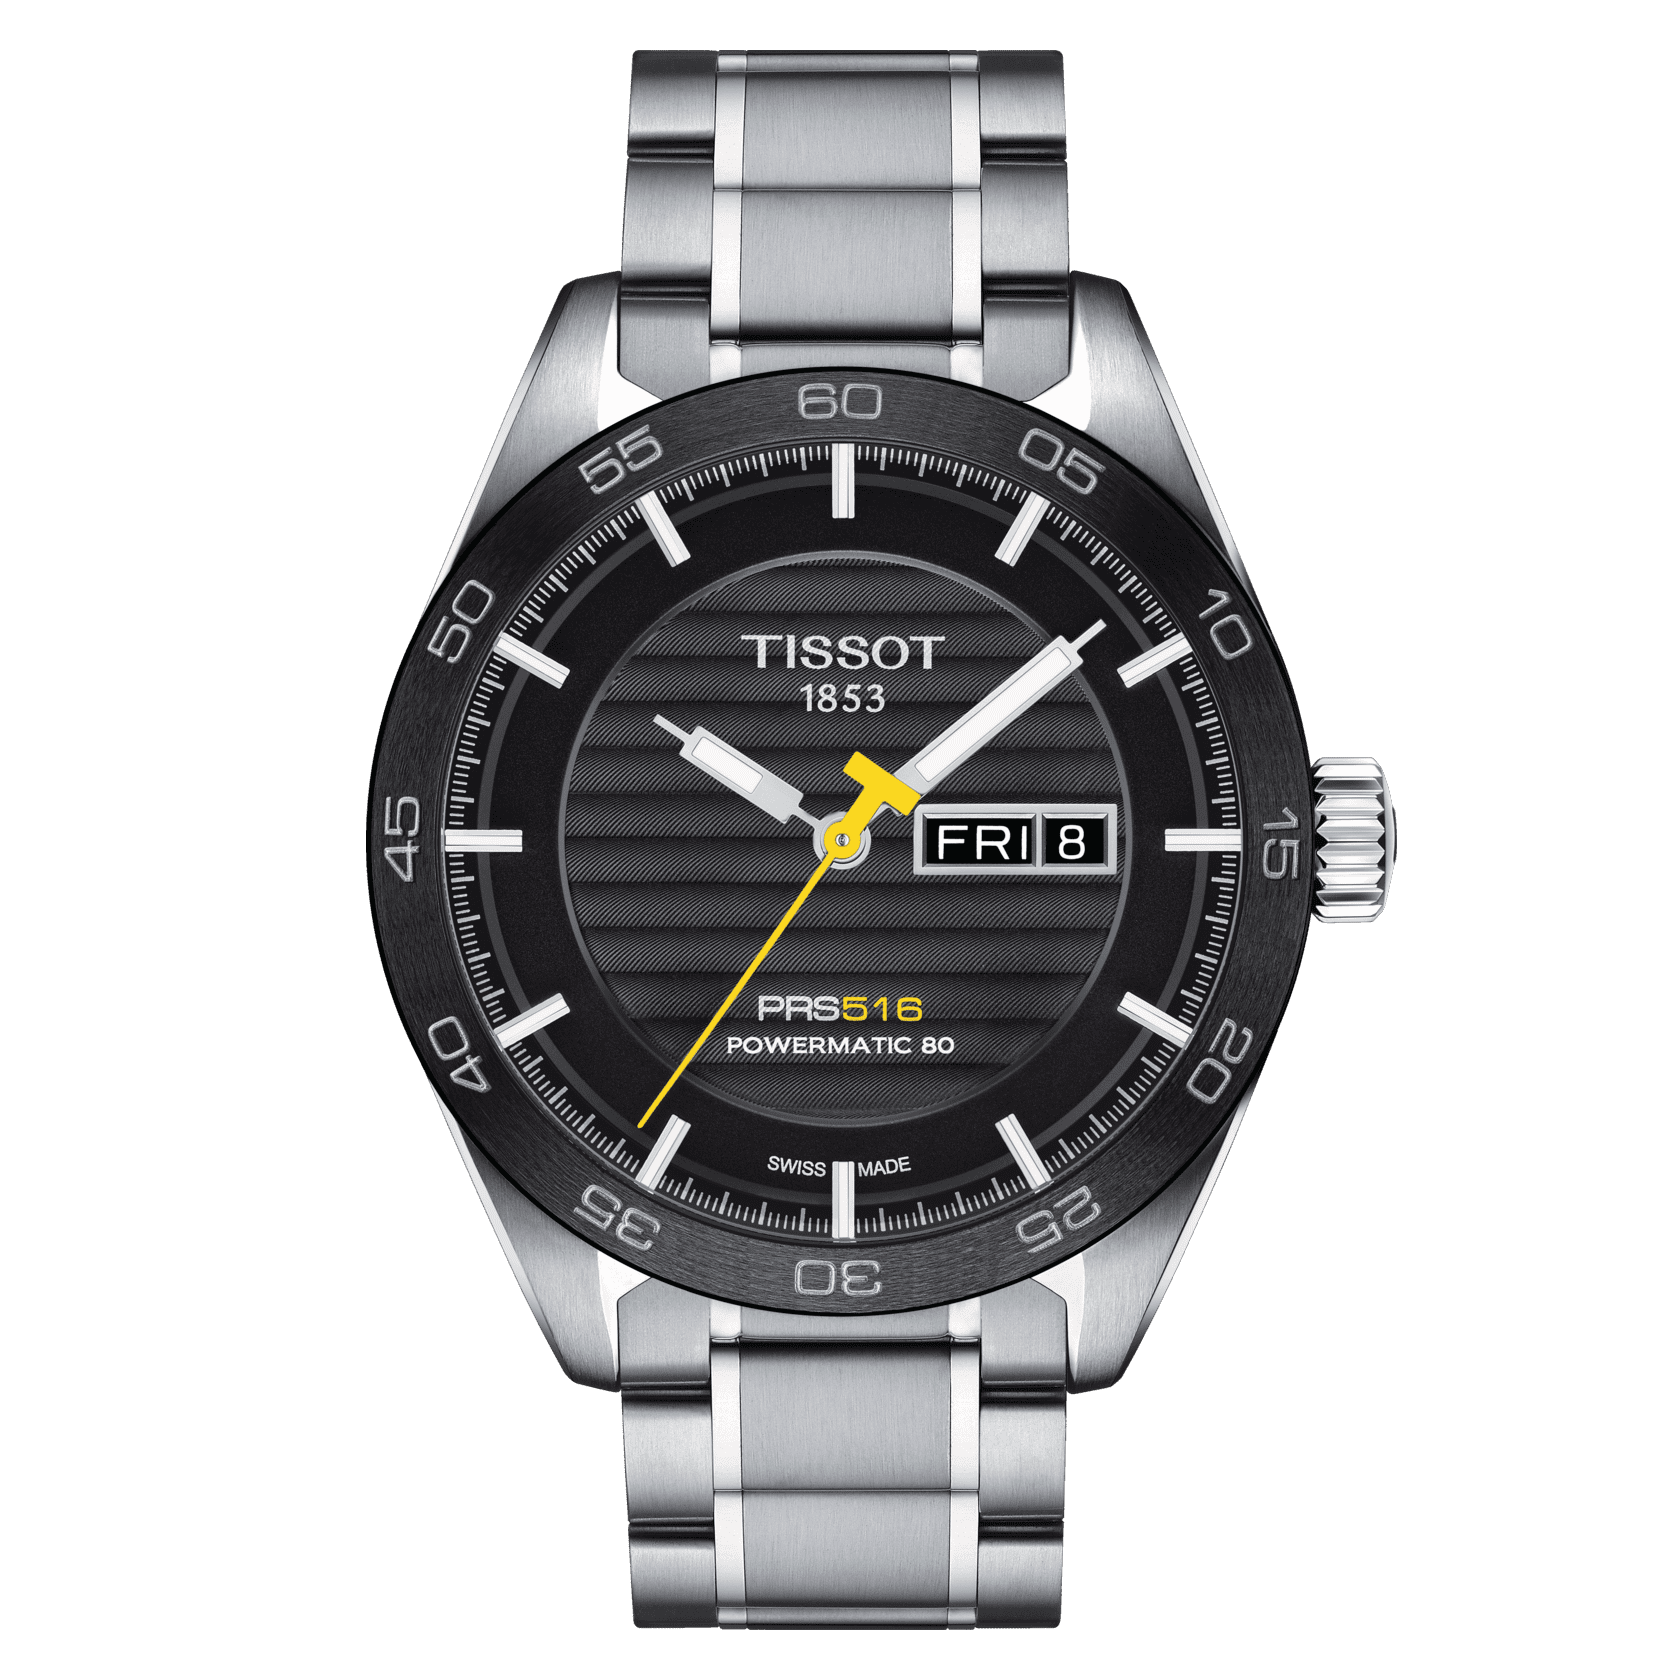 Replication Titoni Watches